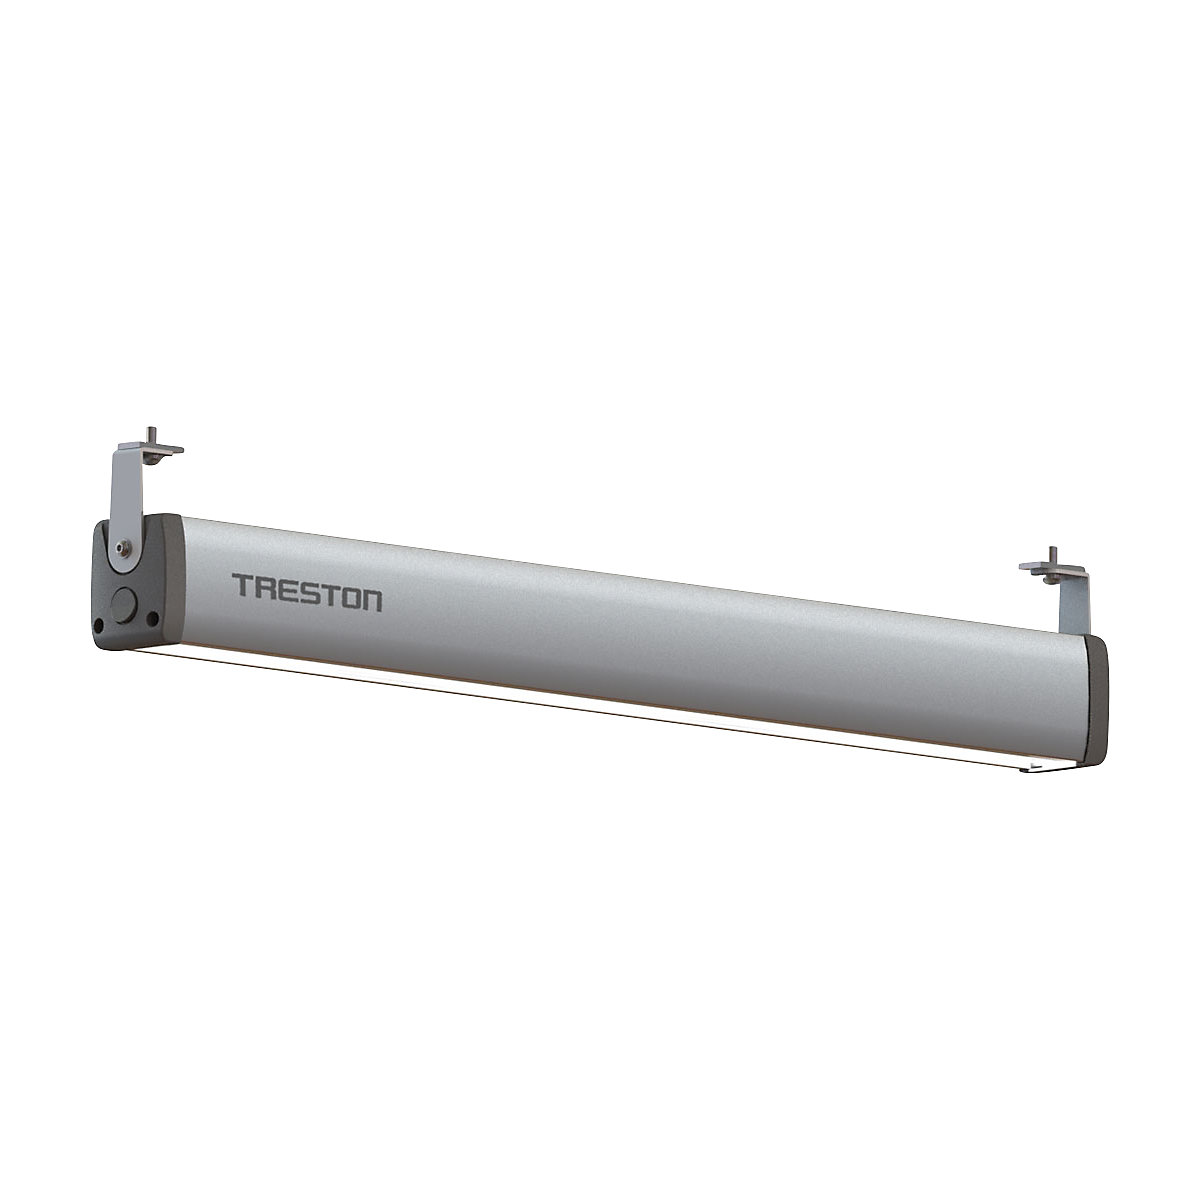 IntoLite LED-es munkahelyi lámpa – Treston